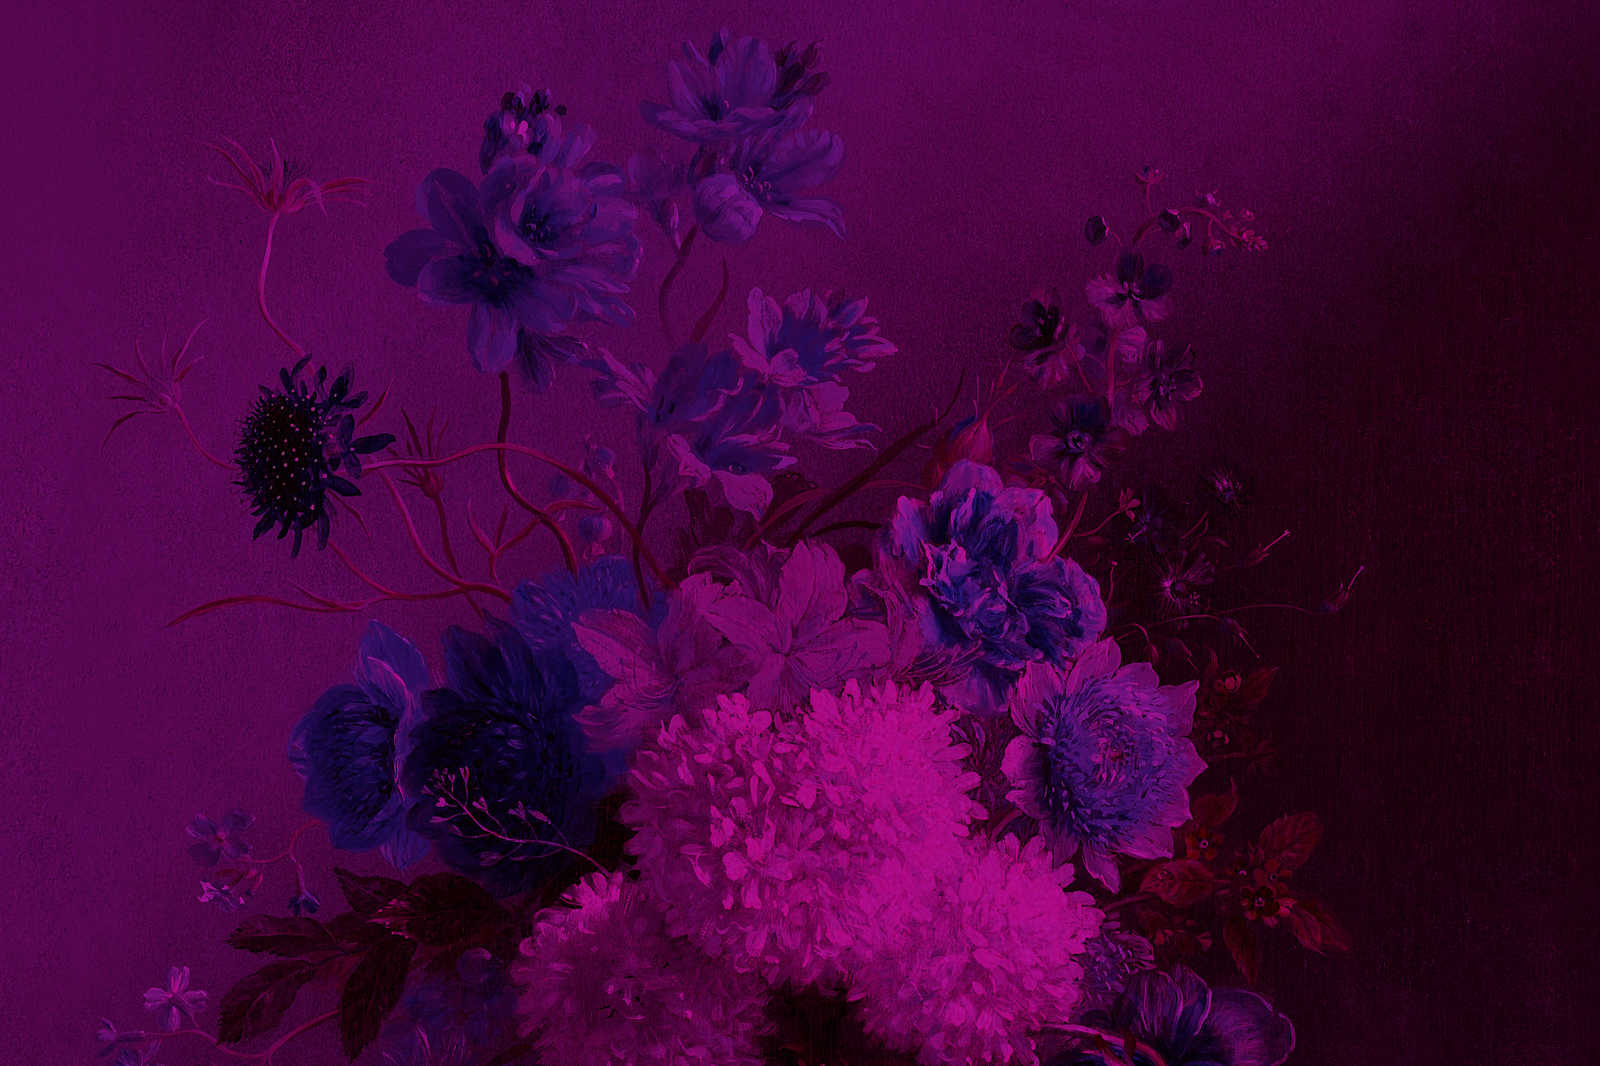             Toile néon avec fleurs nature morte | bouquet Vibran 3 - 0,90 m x 0,60 m
        